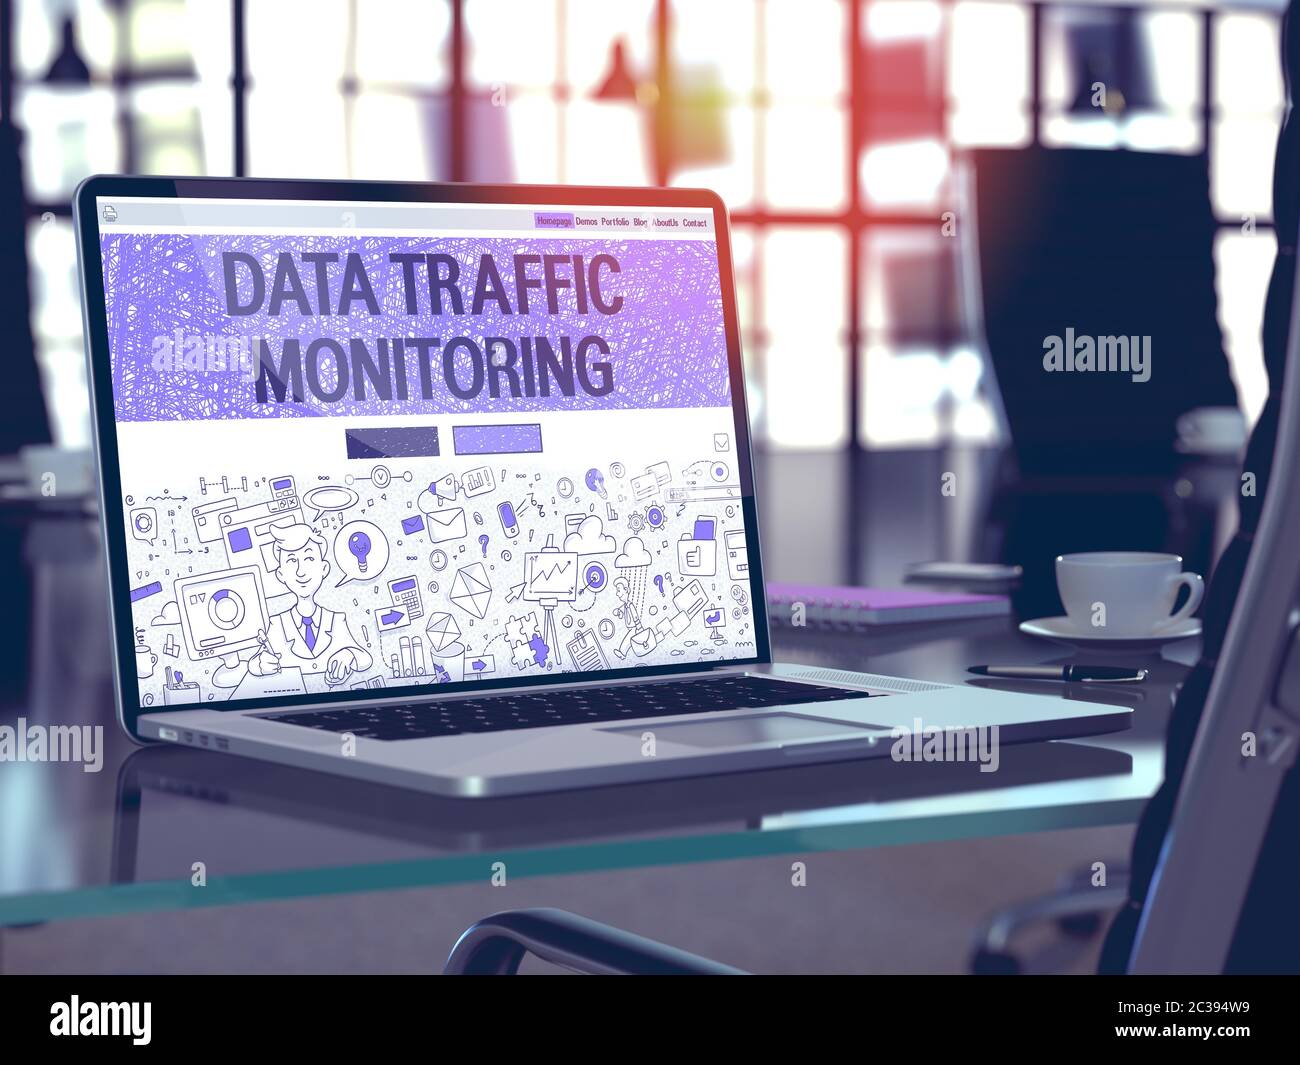 Informazioni sul monitoraggio del traffico dati - Chiuseup sulla landing page dello schermo del notebook in un ambiente di lavoro moderno. Immagine tonata con messa a fuoco selettiva. Rendering 3D. Foto Stock